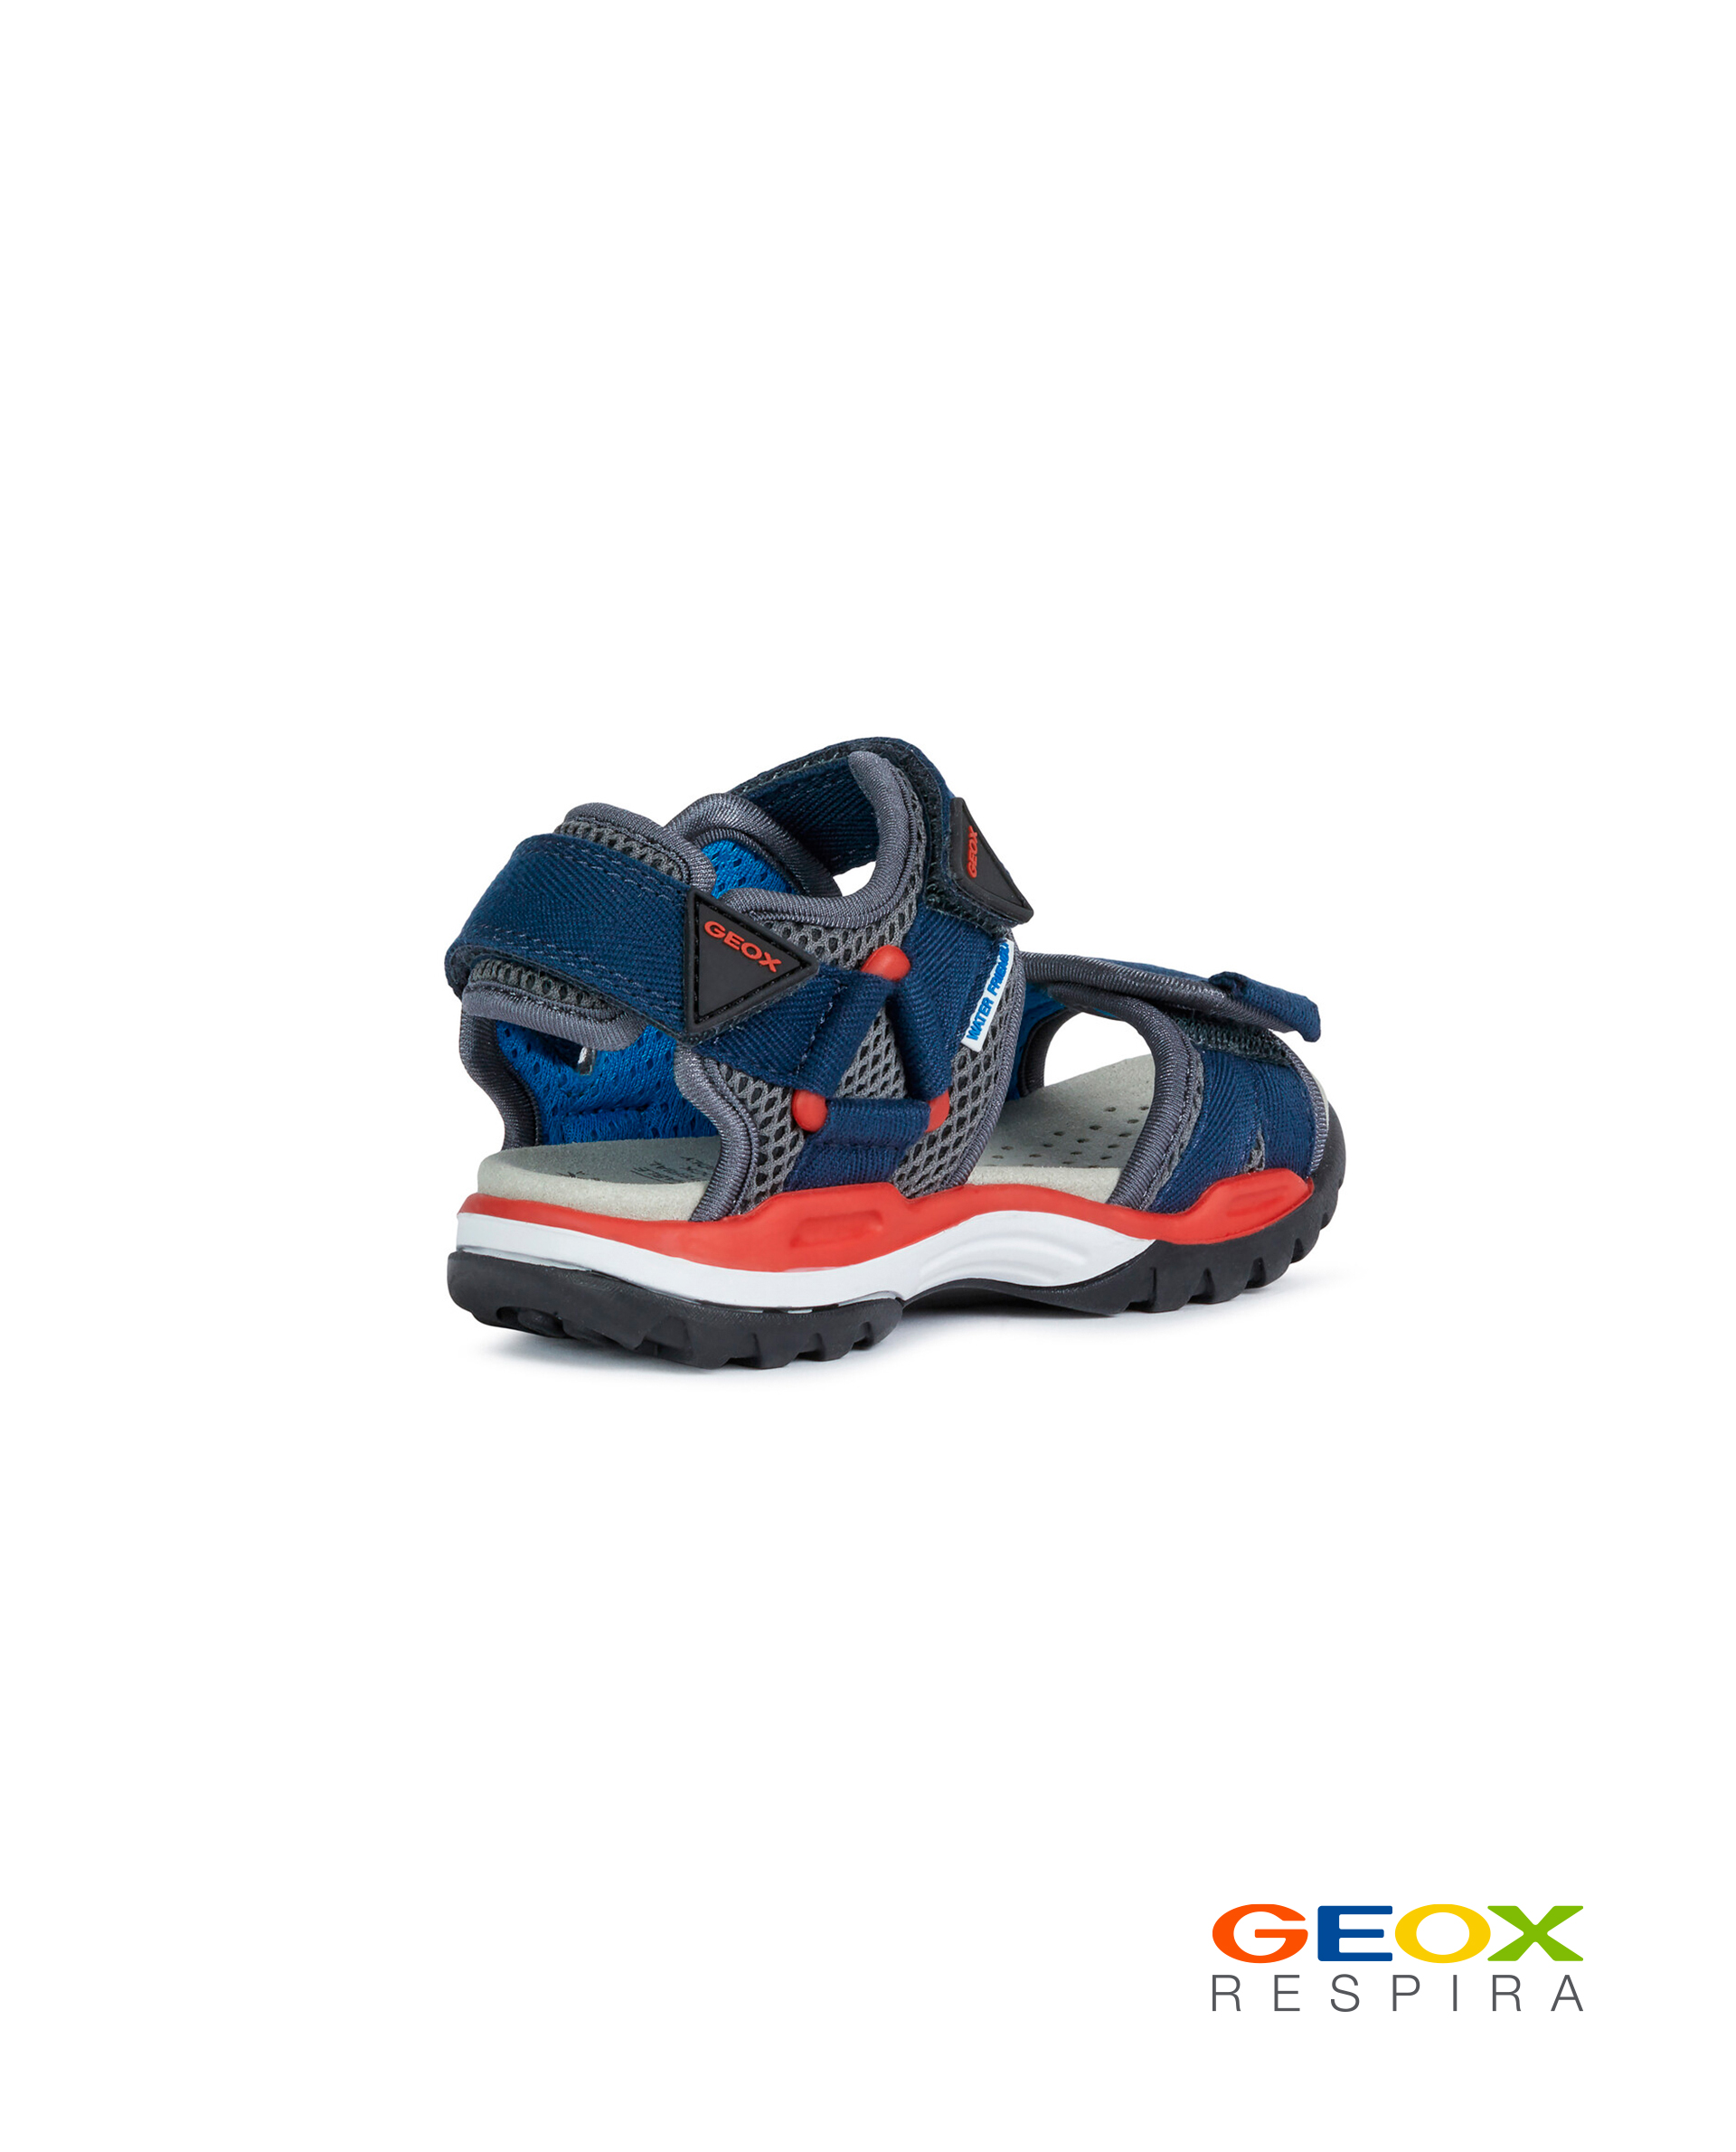 Синие сандалии Geox для мальчика J020RC01411C0735, размер 37, цвет синий - фото 3